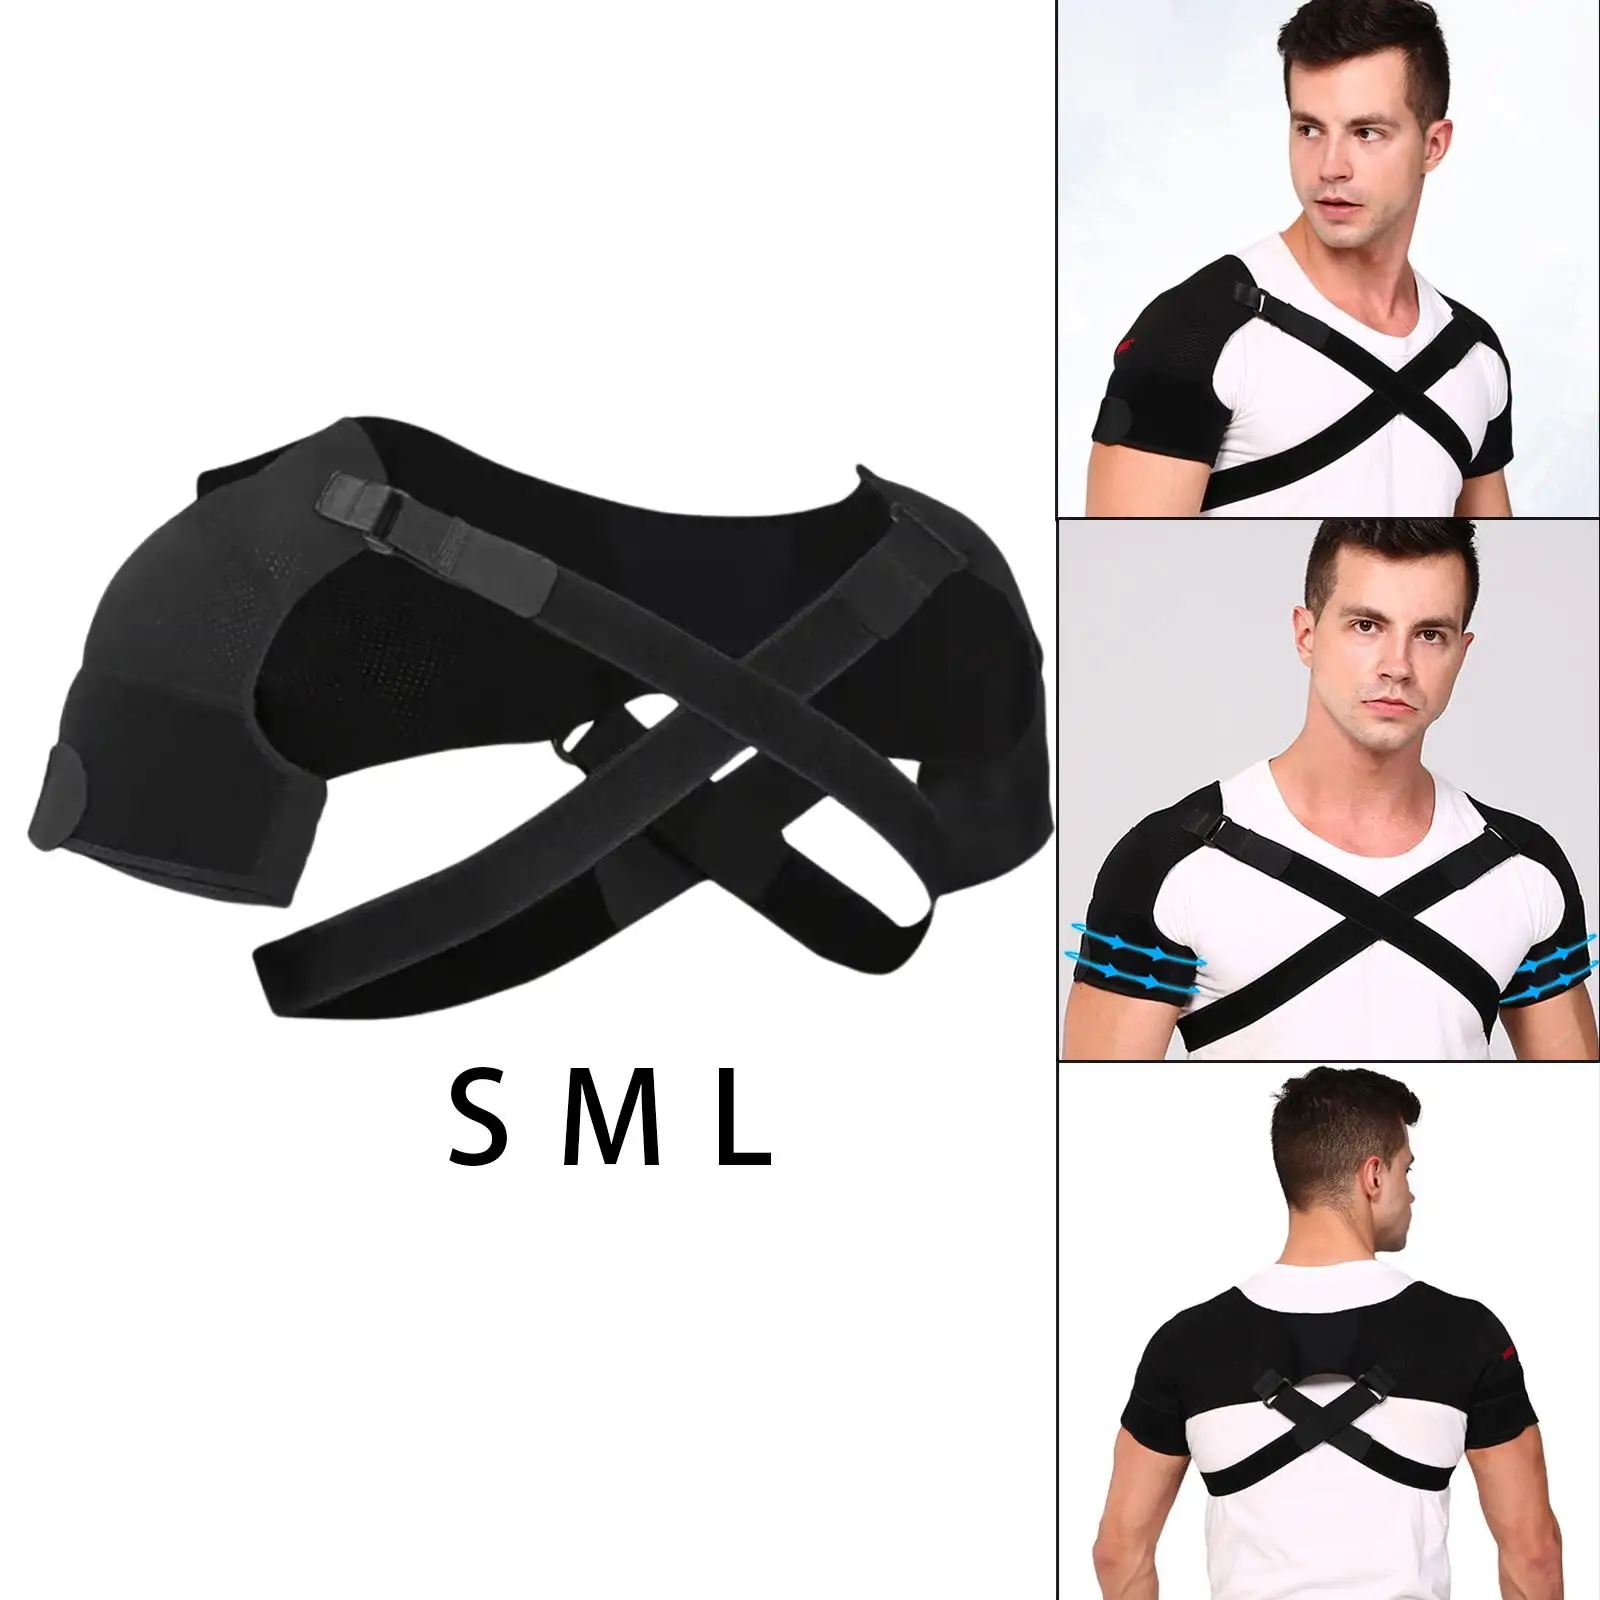 Double Shoulder Support Strap Adjustable   Shoulder Brace Wrap Belt Band Pad Back Support Protector